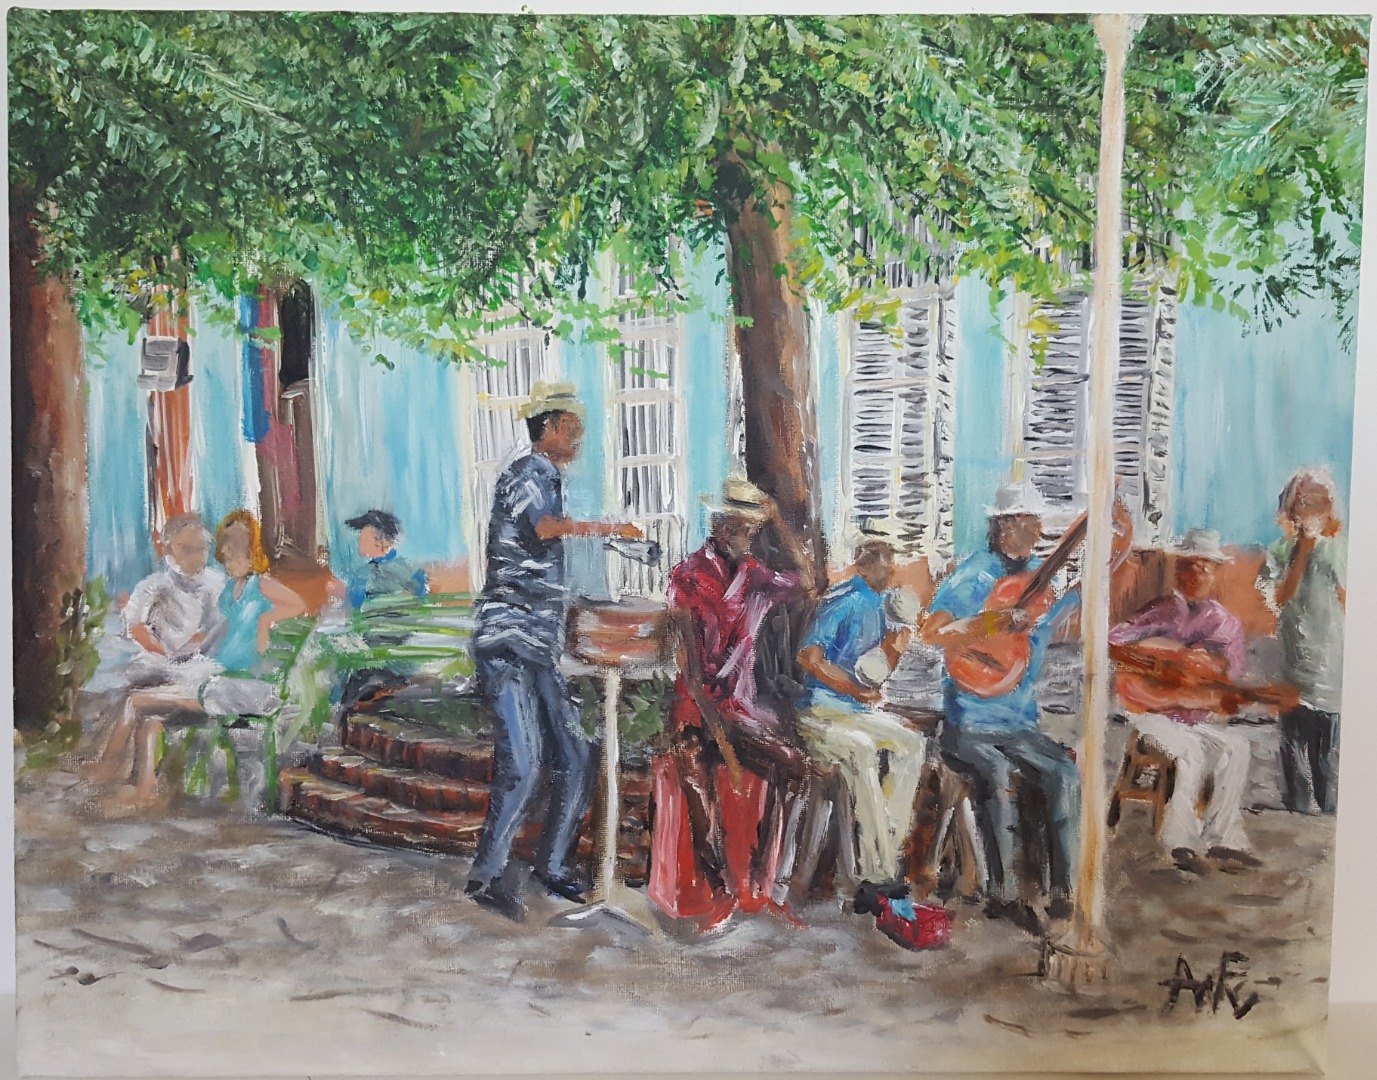 muzikanten in Trinidad Cuba